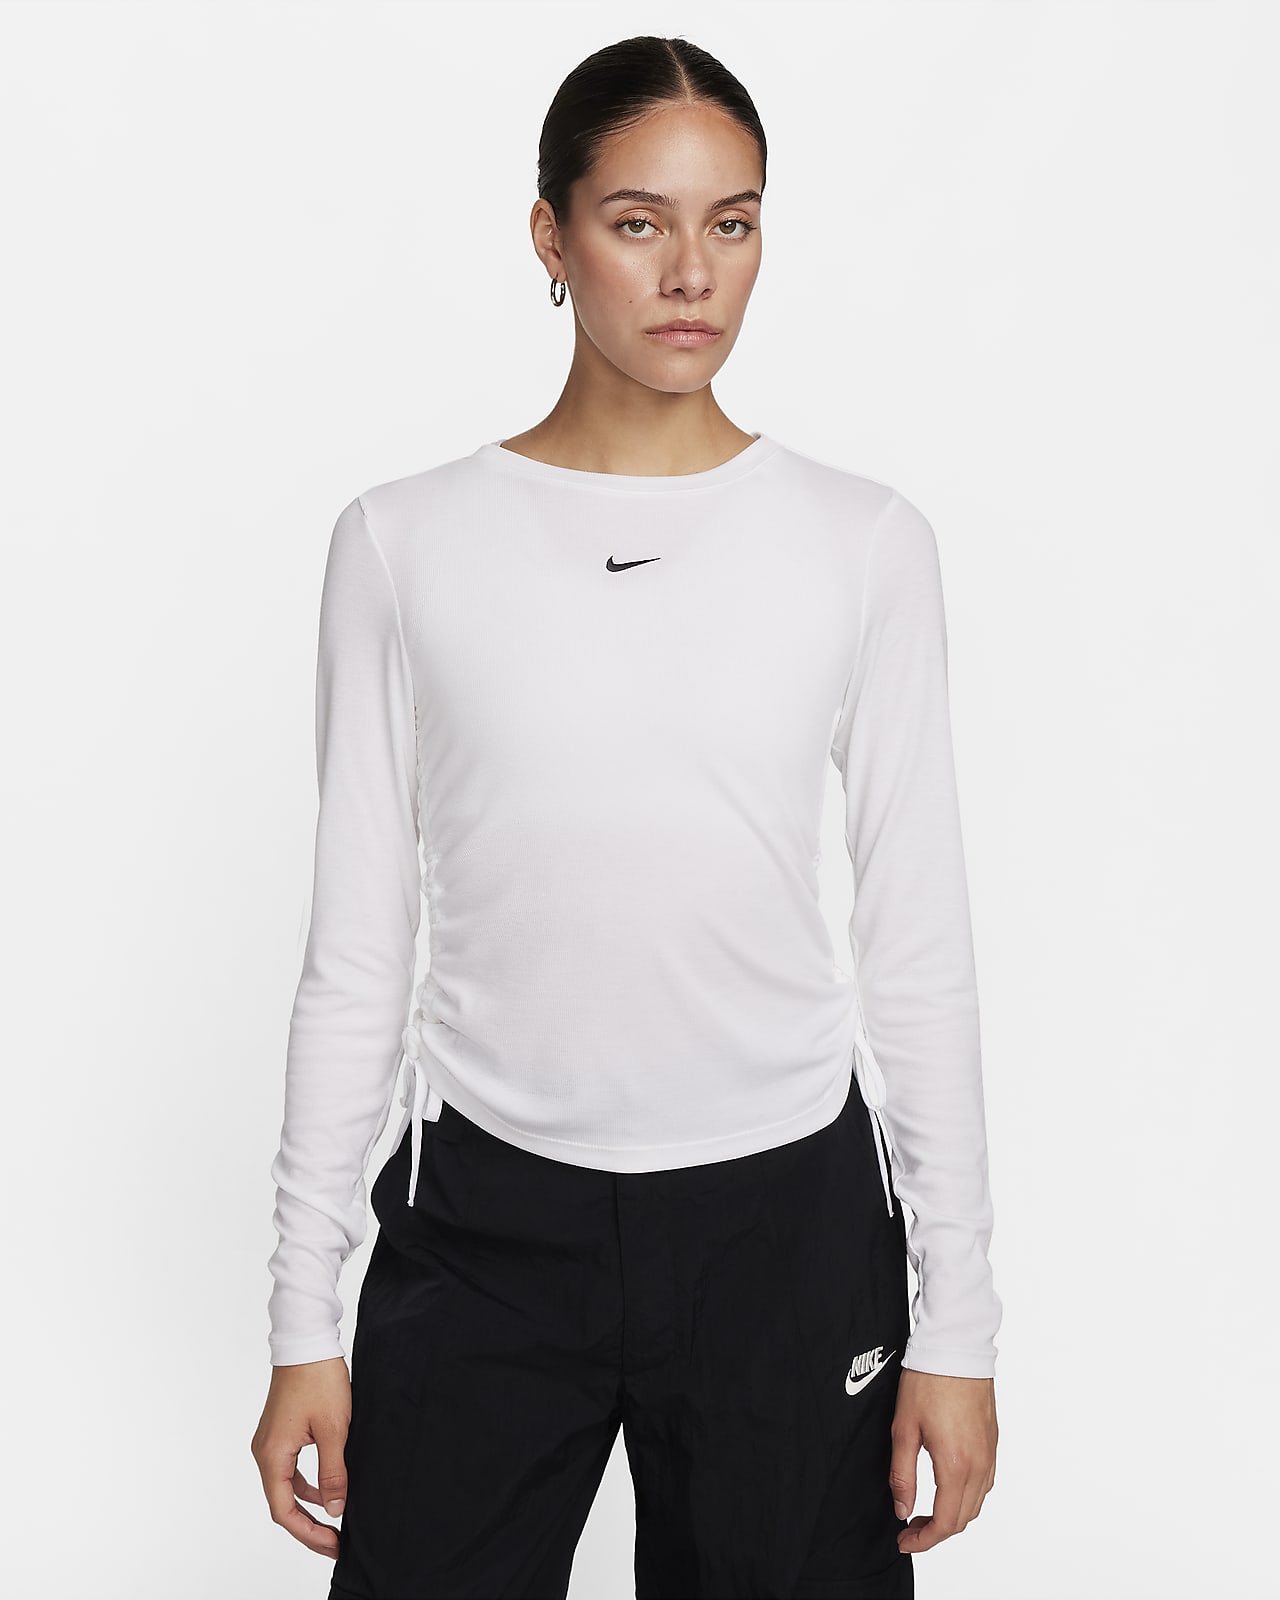 Nike Sportswear Essential hosszú ujjú, bordázott, enyhén rövid szabású női felső